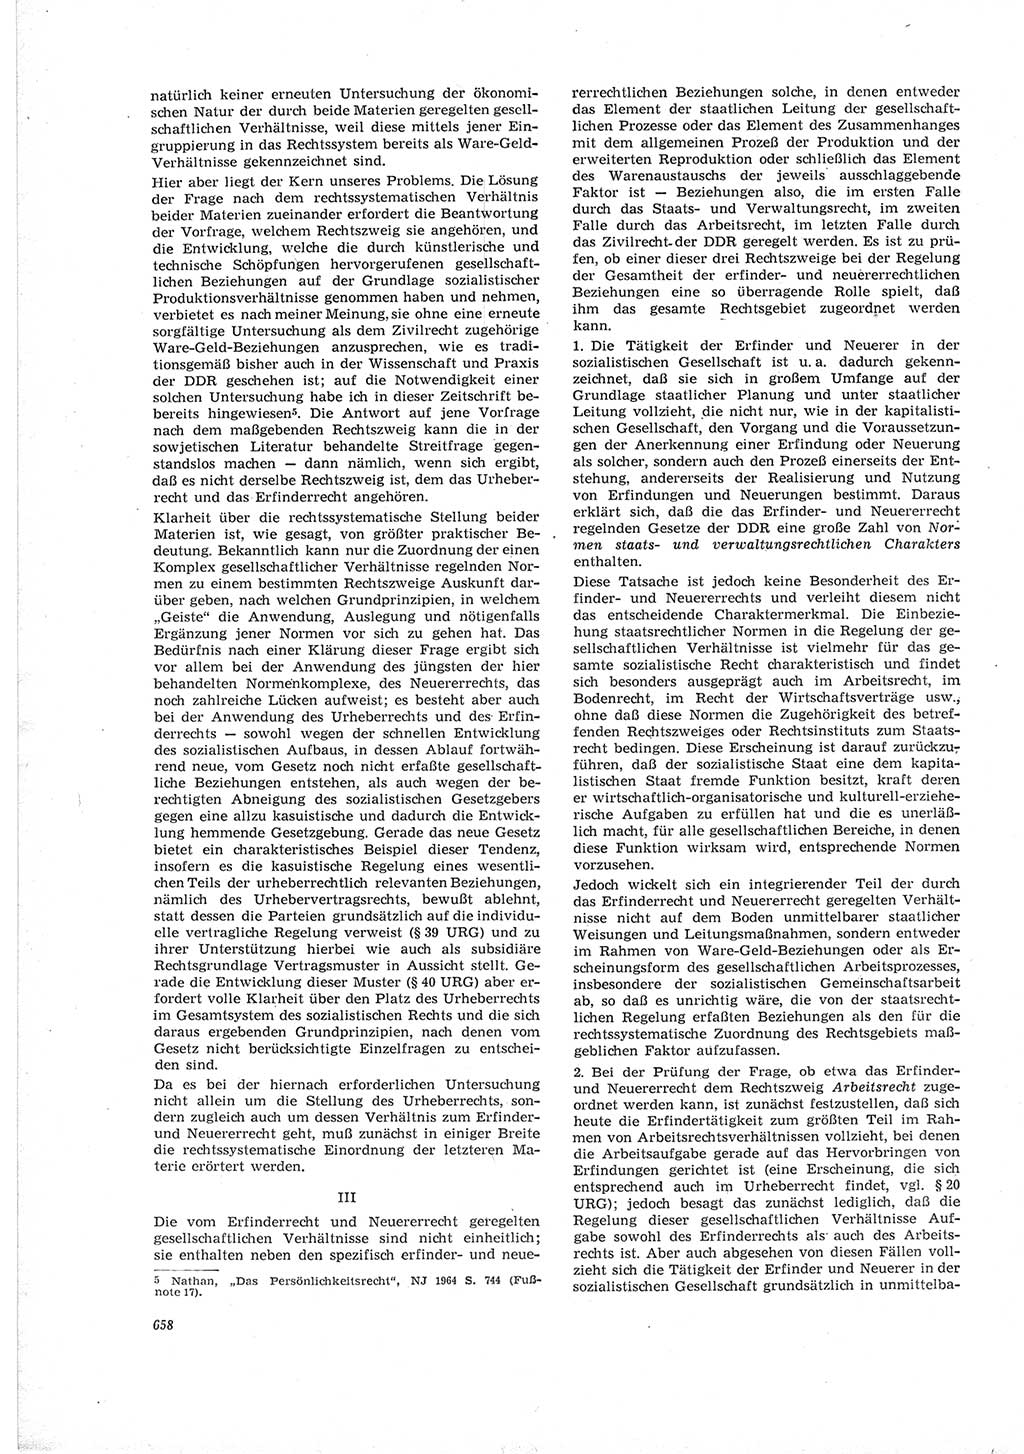 Neue Justiz (NJ), Zeitschrift für Recht und Rechtswissenschaft [Deutsche Demokratische Republik (DDR)], 19. Jahrgang 1965, Seite 658 (NJ DDR 1965, S. 658)